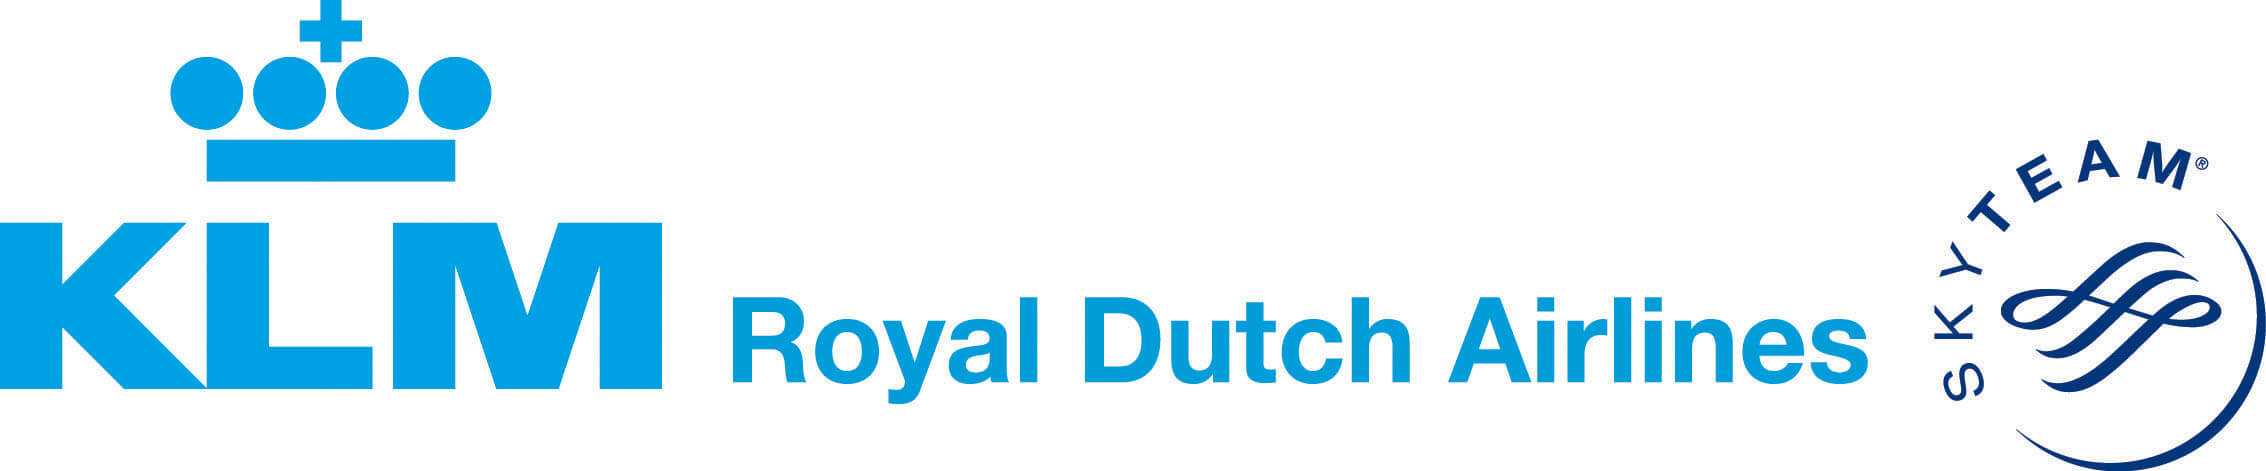 KLM Royal Dutch Airlines Logo - Find Flight Deals on Airfarewatchdog